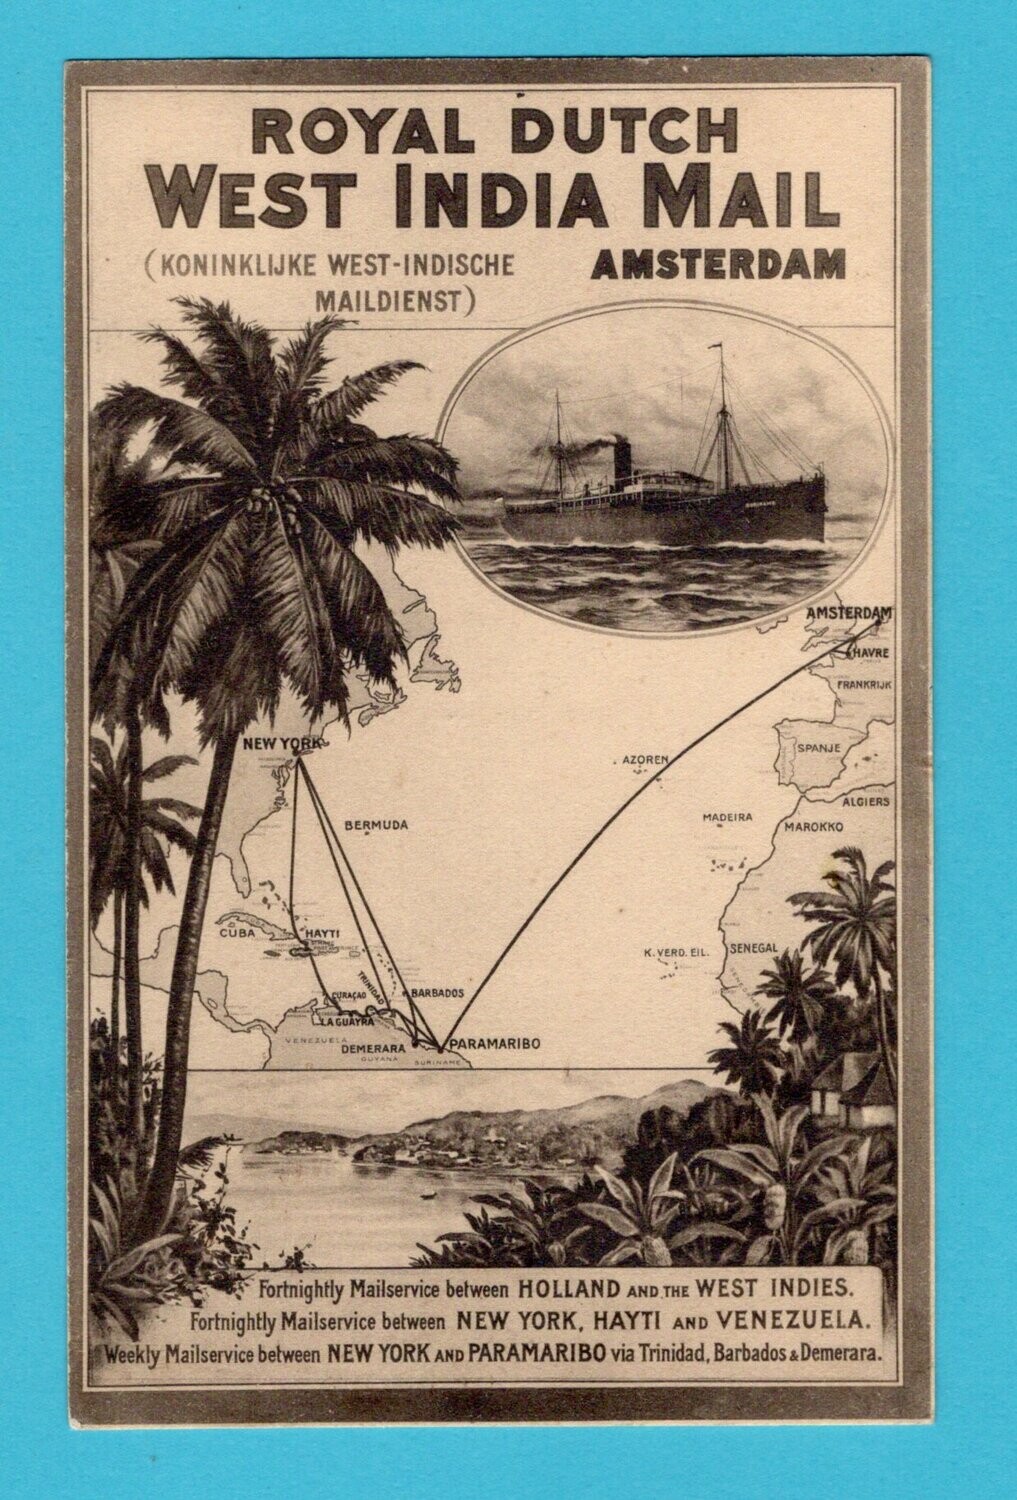 NEDERLAND prentbriefkaart Royal Dutch West India Mail *